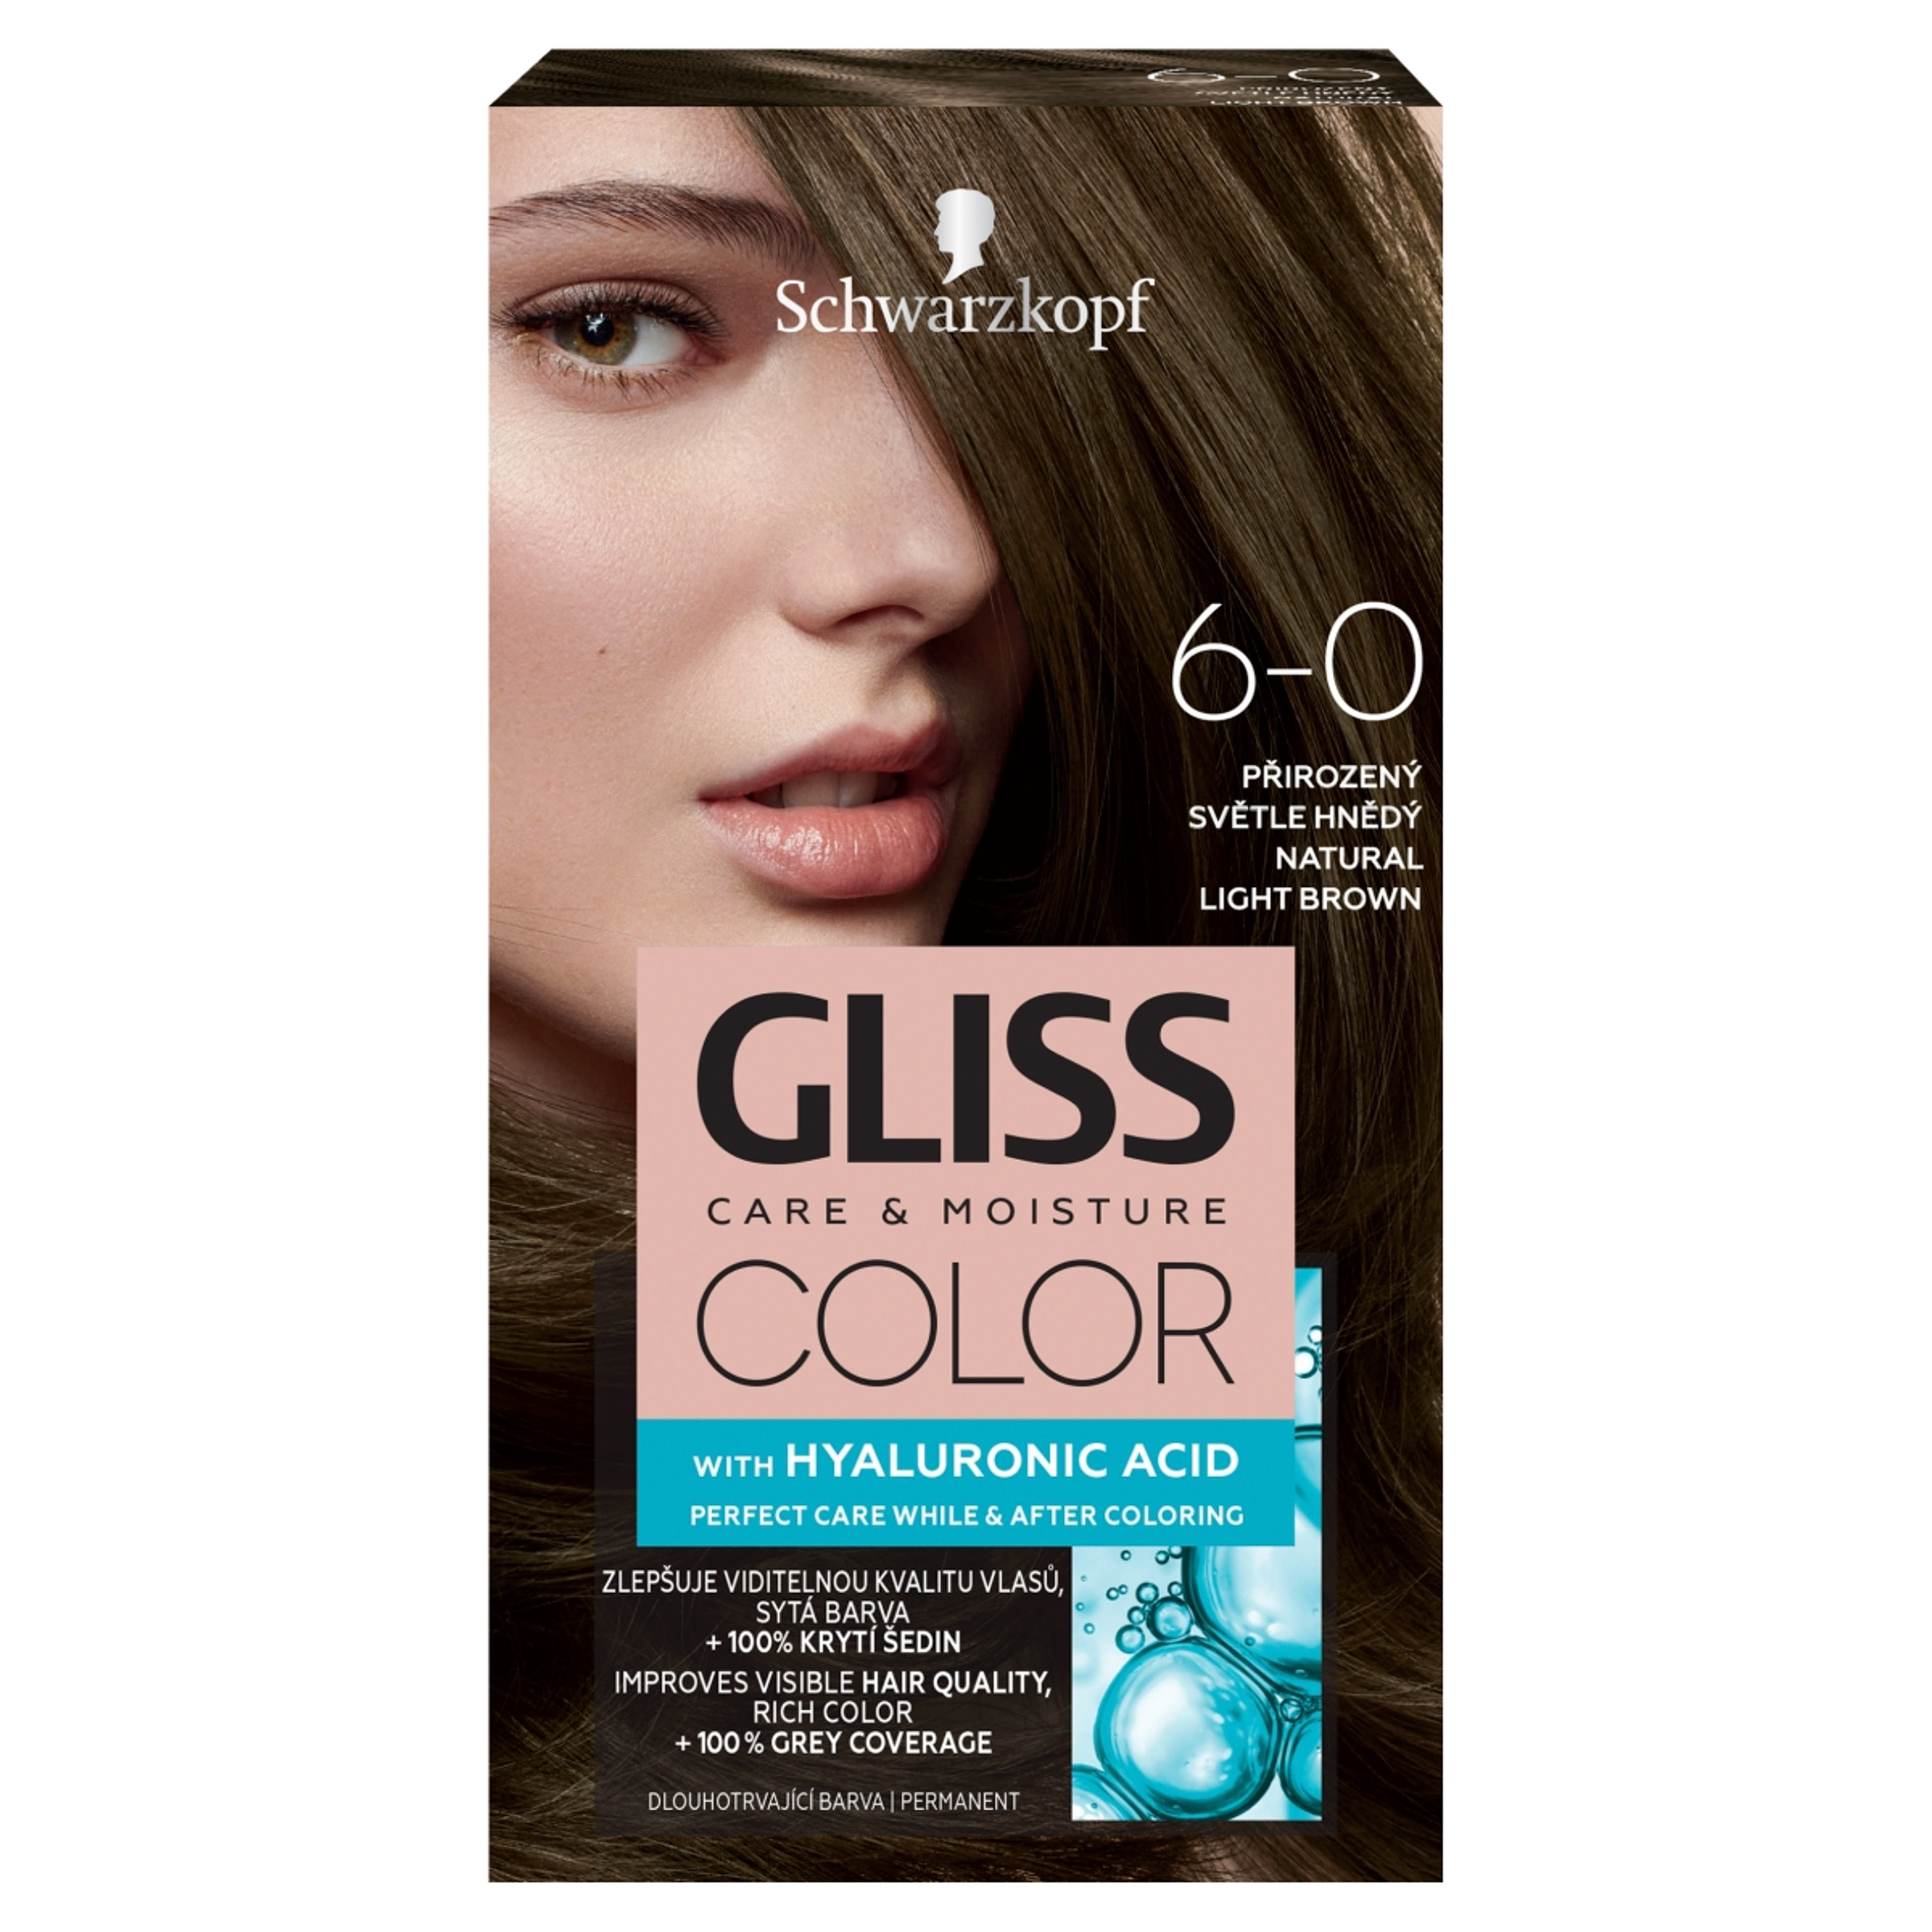 Gliss Color tartós hajfesték 6-0 Természetes világosbarna - 1 db